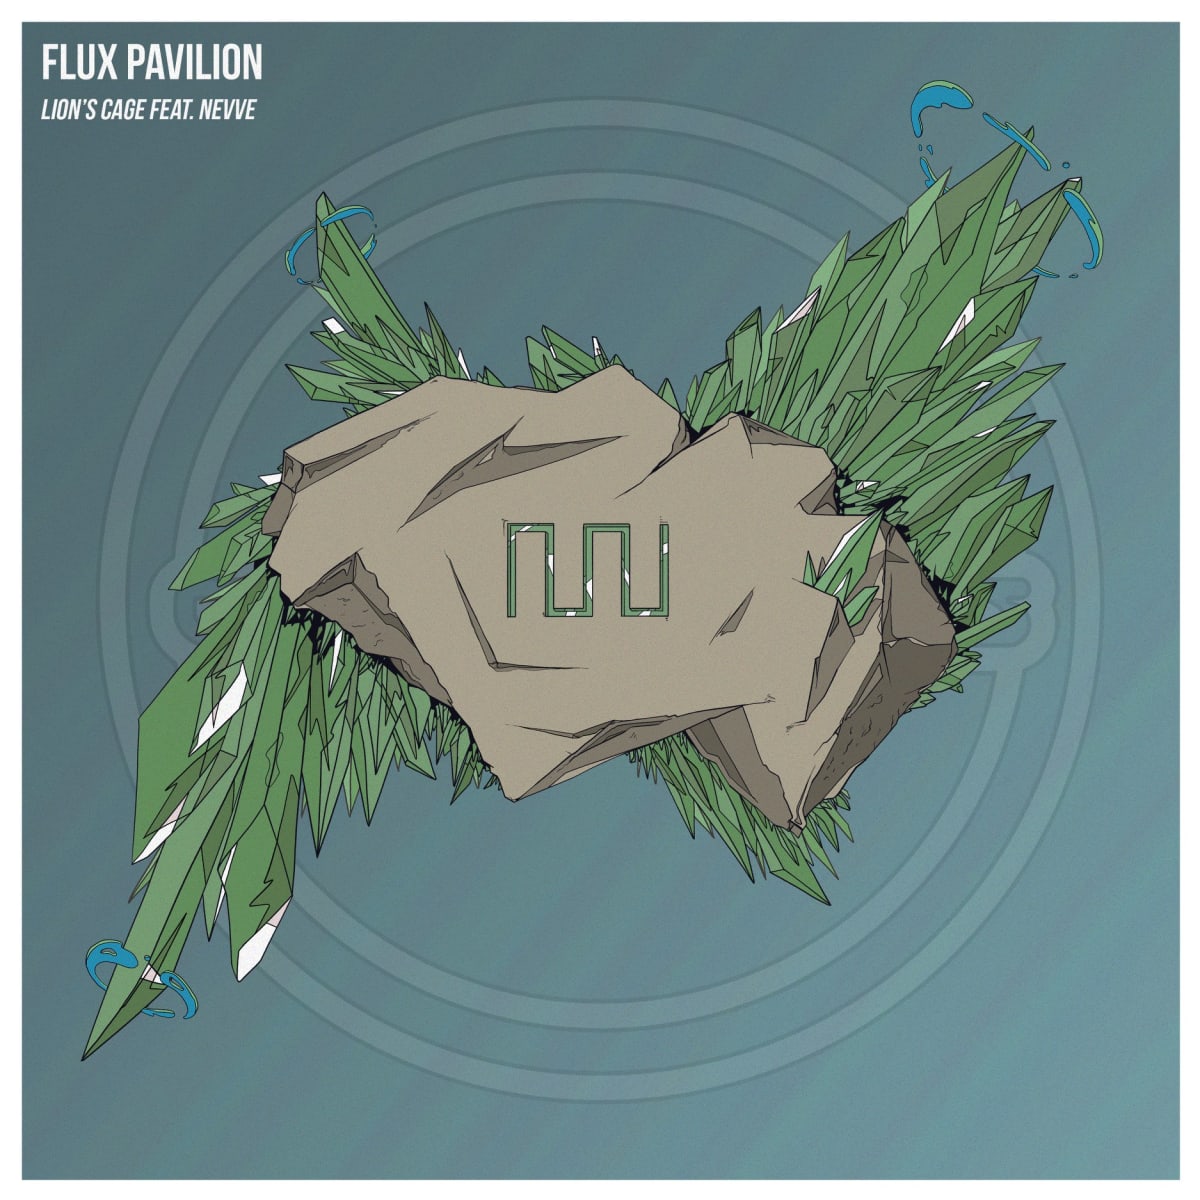 flux pavilion album cover